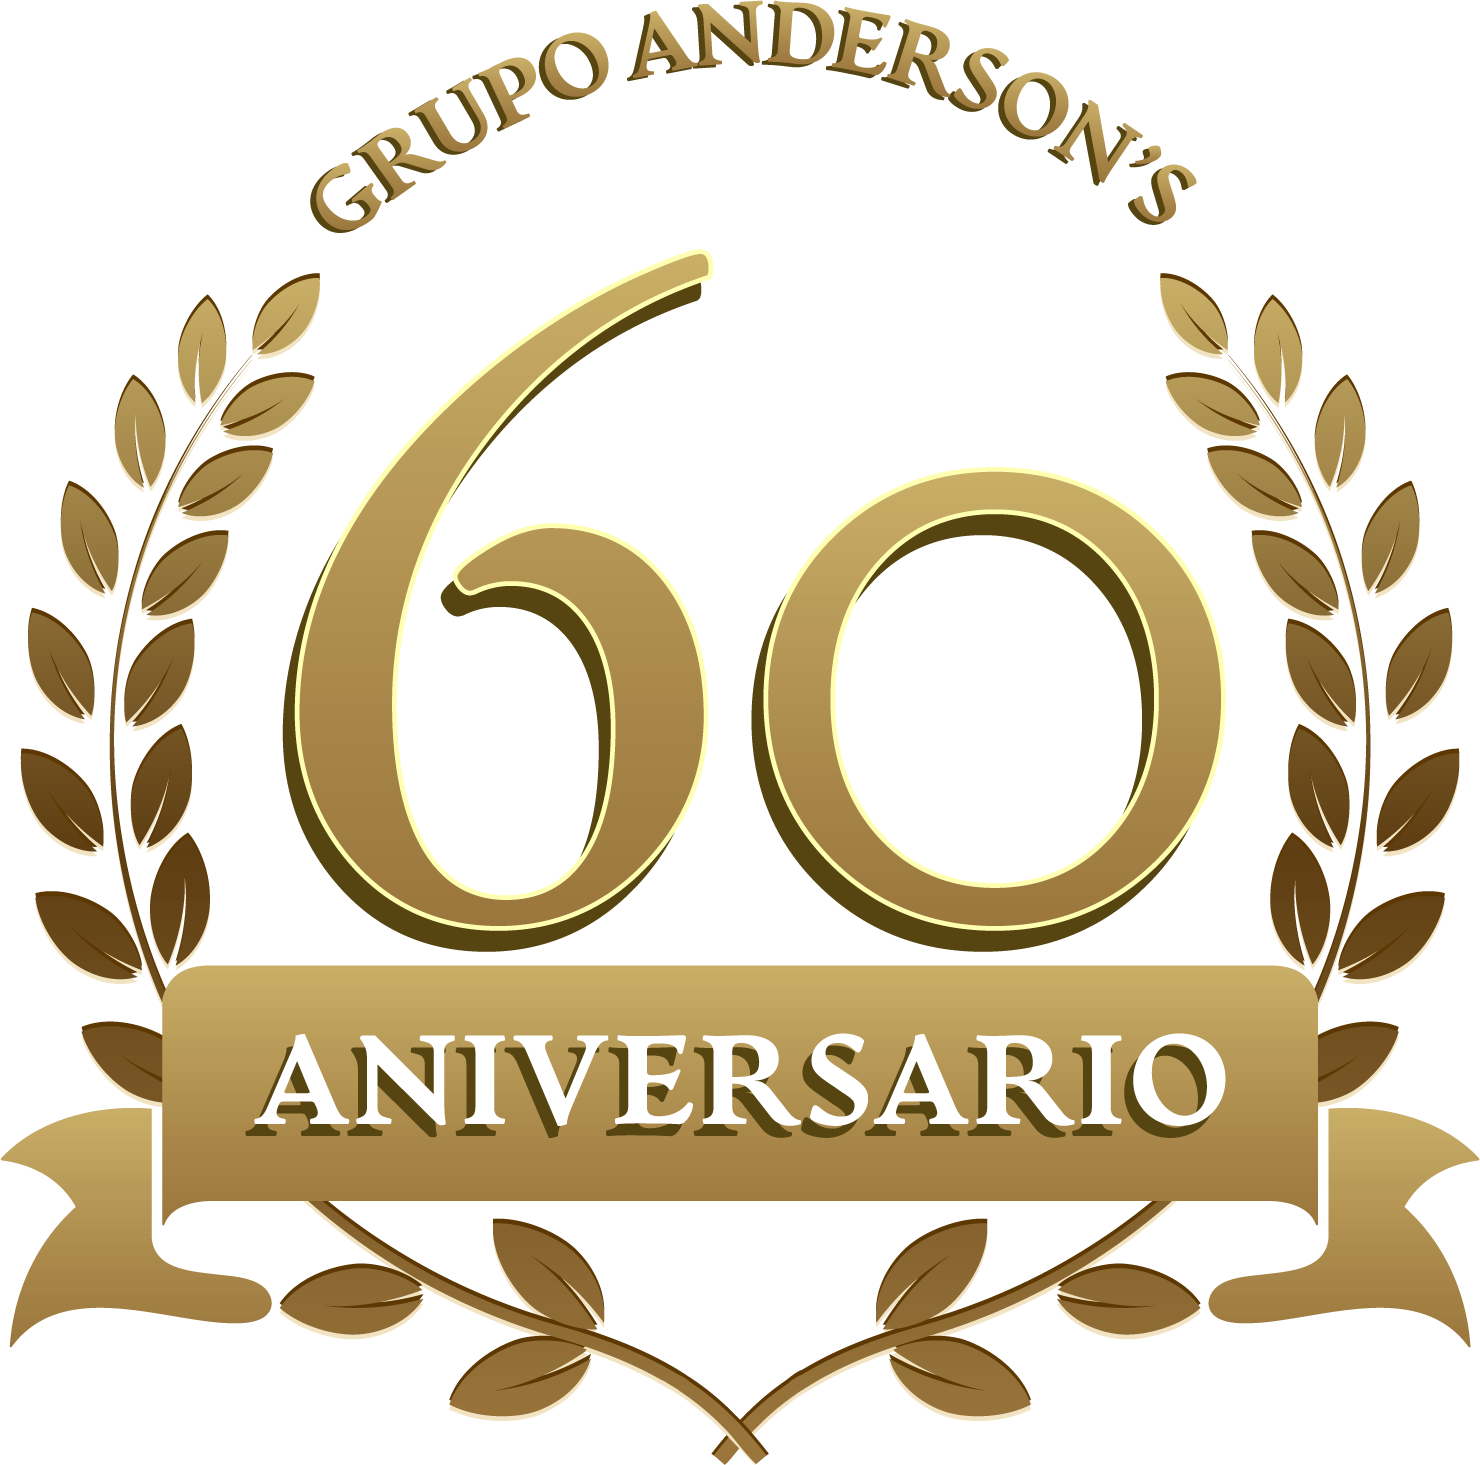 60-aniversario-grupo-andersons